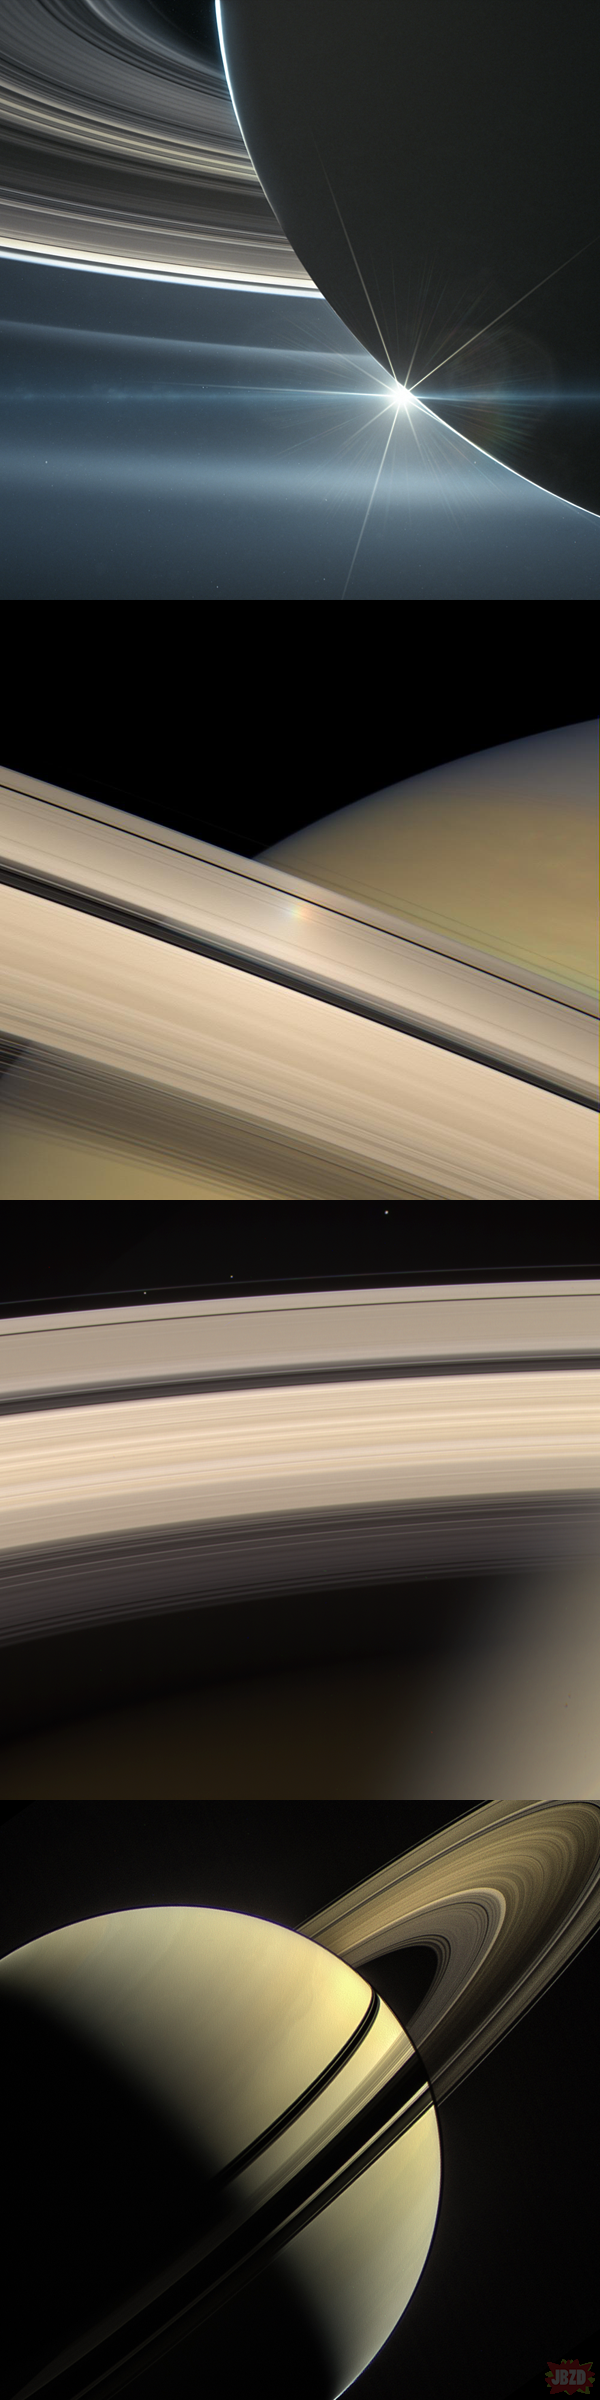 Spektakularne zdjęcia Saturna przesłane przez sondę Cassini